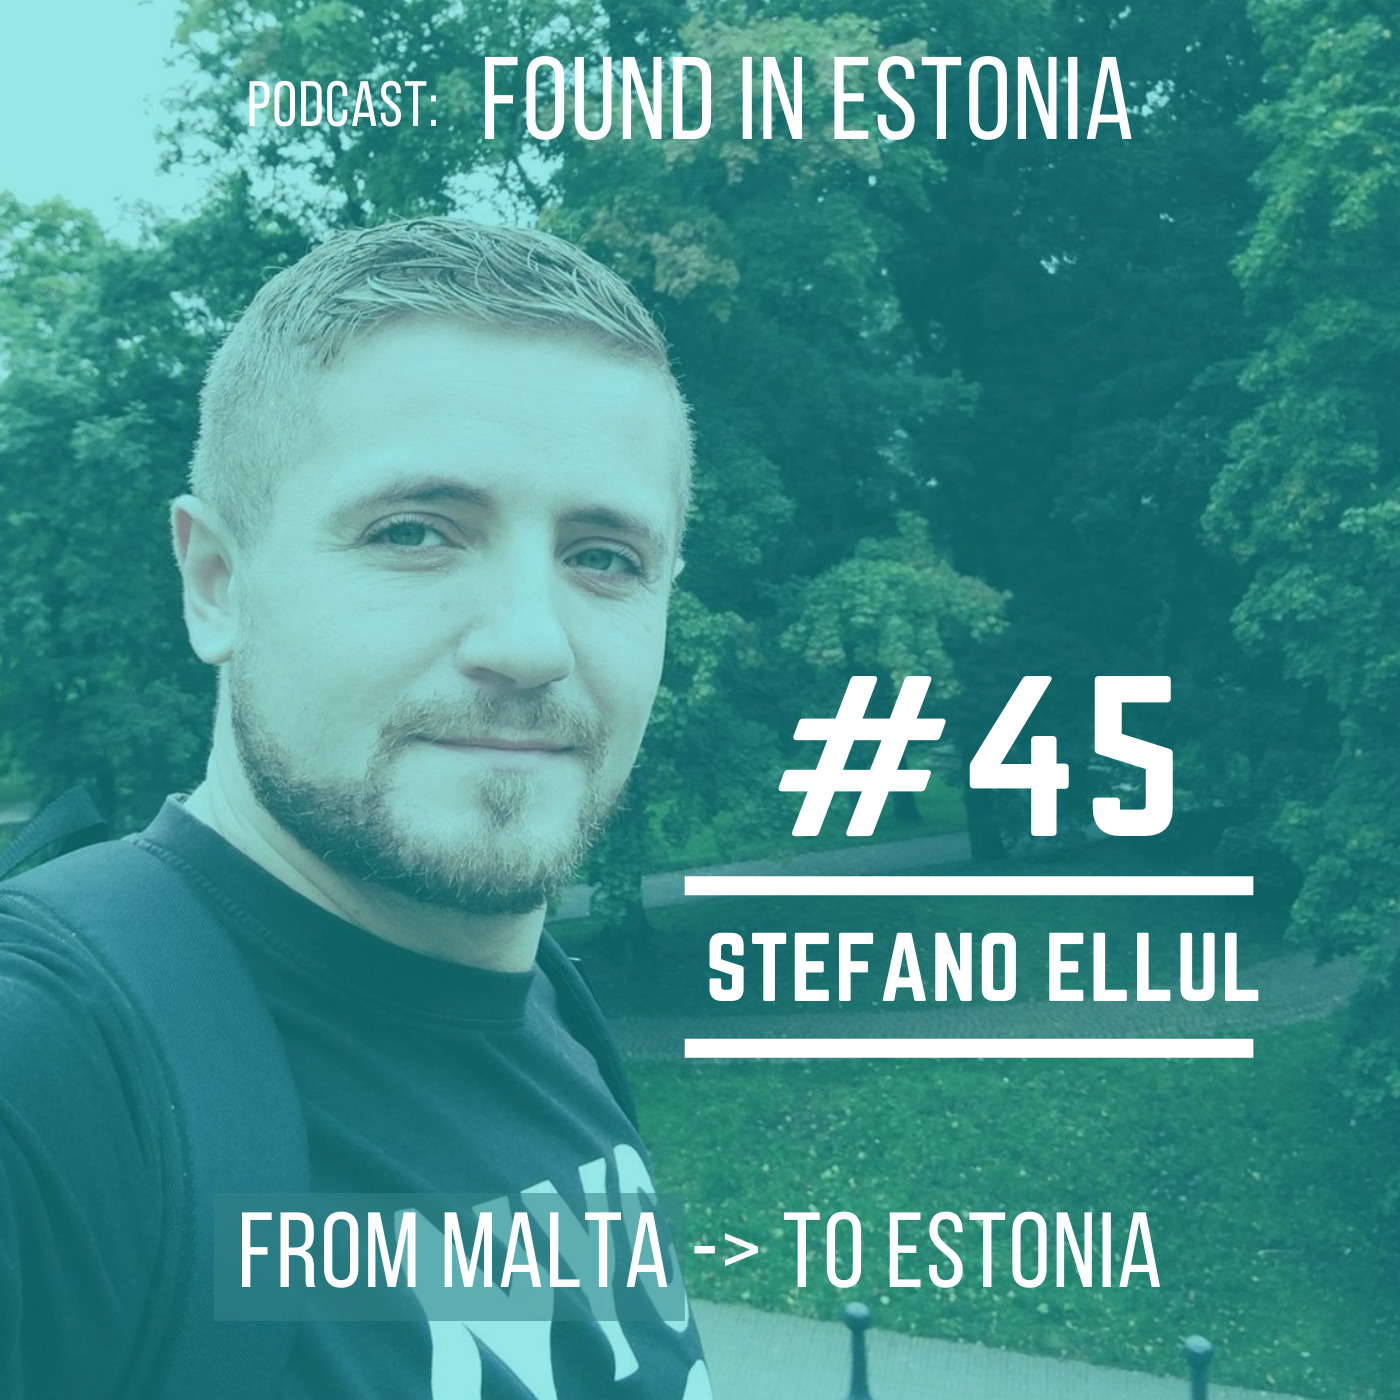 #45 Stefano Ellul from Malta to Estonia